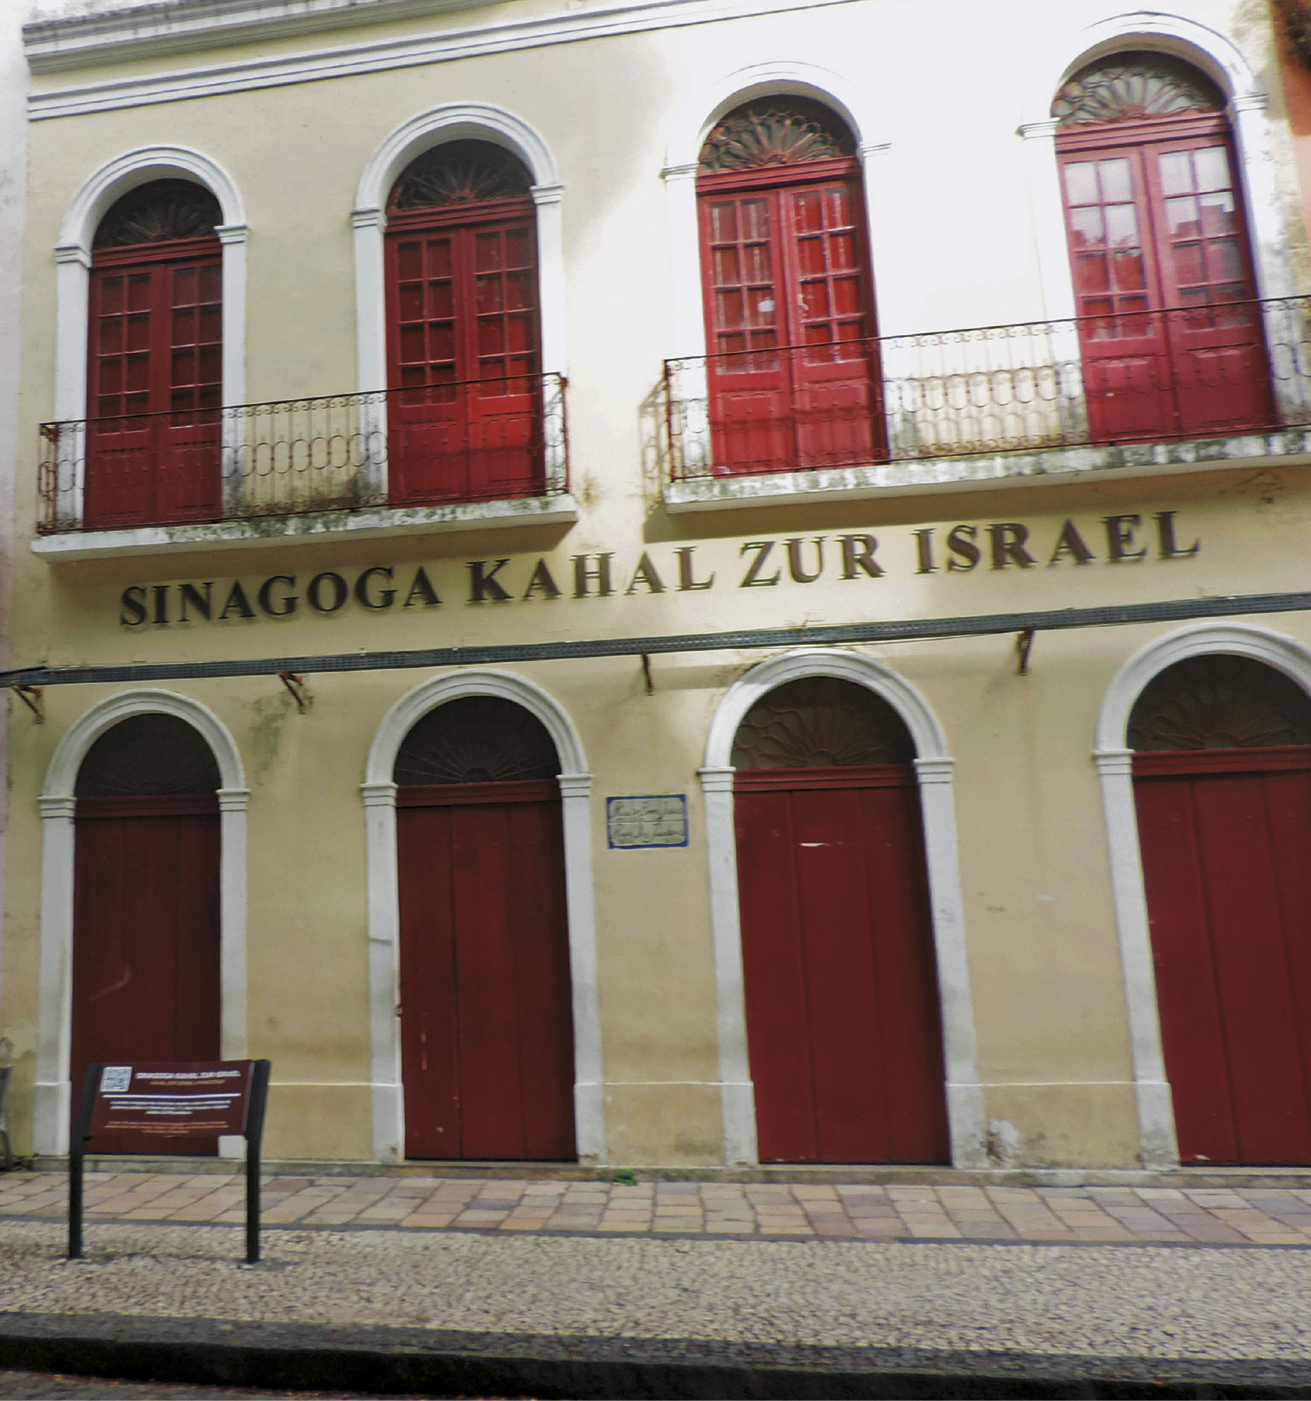 Fotografia. Fachada de edifício amarelo-claro de dois pavimentos com quatro grandes portas vermelhas de madeira em formato de arco no térreo e quatro no andar superior que dão para sacadas. Na frente, a inscrição: Sinagoga Kahal Zur Israel.